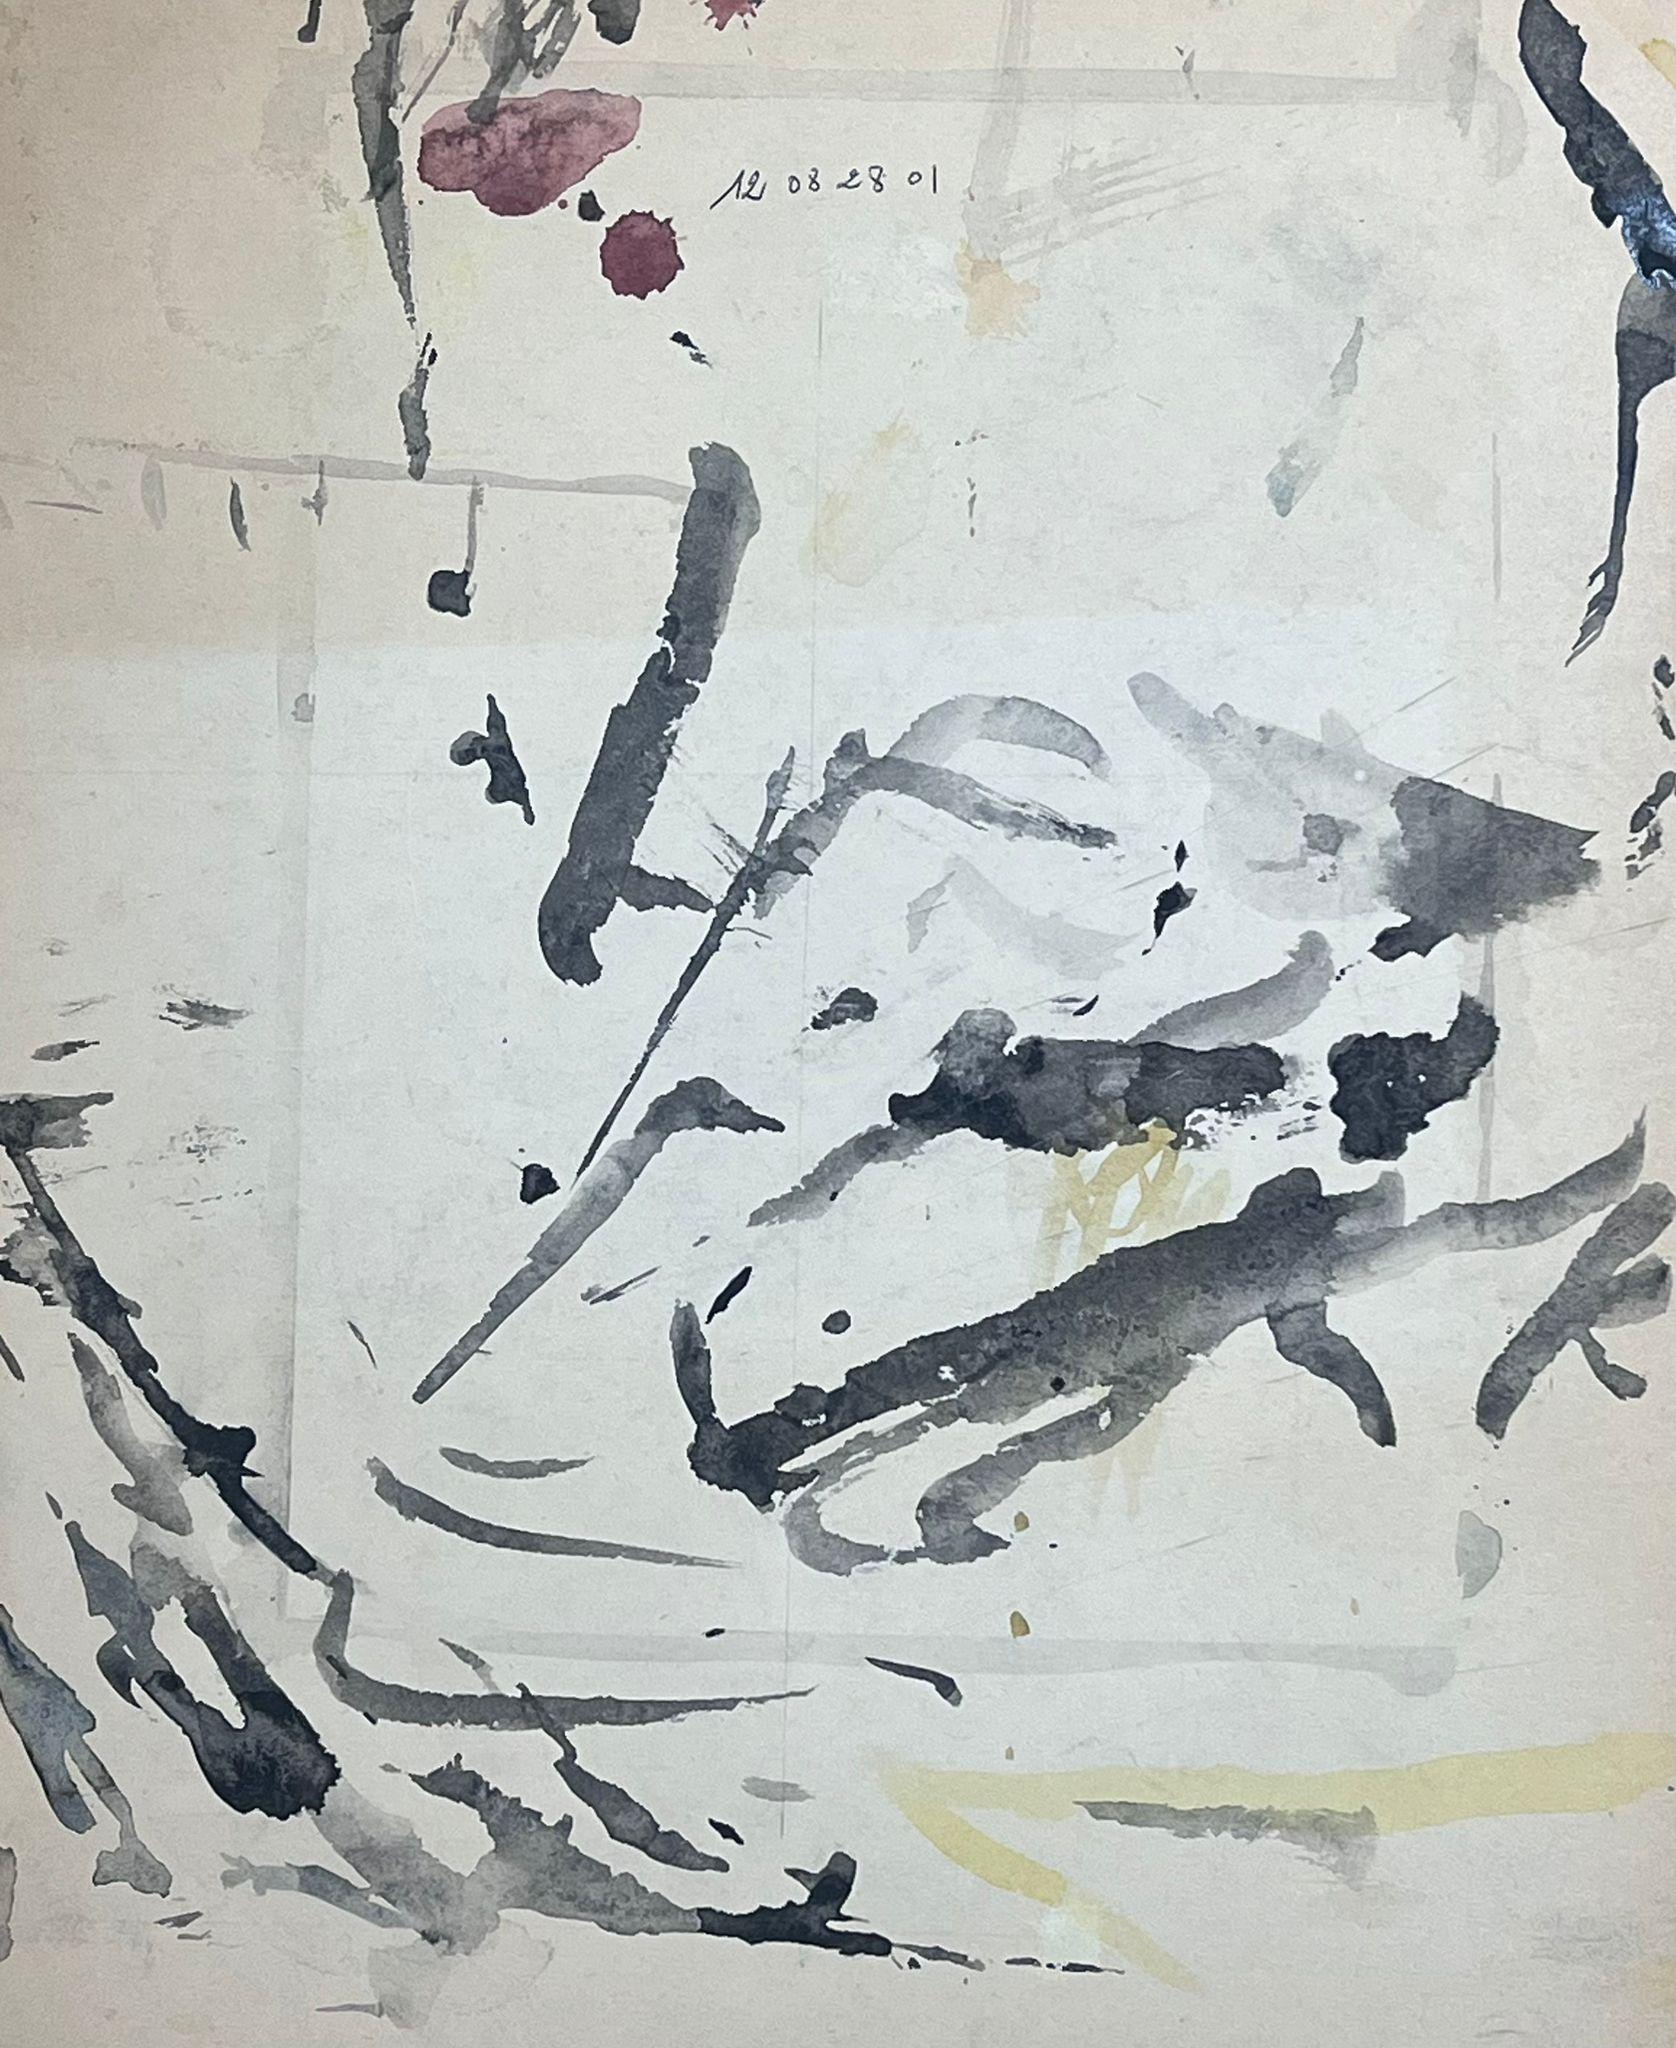 Abstrakt-expressionistische Komposition 
von Jacques COULAIS (1955-2011) Aquarell auf Karton
ungerahmt: 16,75 x 14 Zoll
Zustand: ausgezeichnet
Provenienz: Alle Gemälde, die wir von diesem Künstler zum Verkauf anbieten, stammen aus dem Studio des